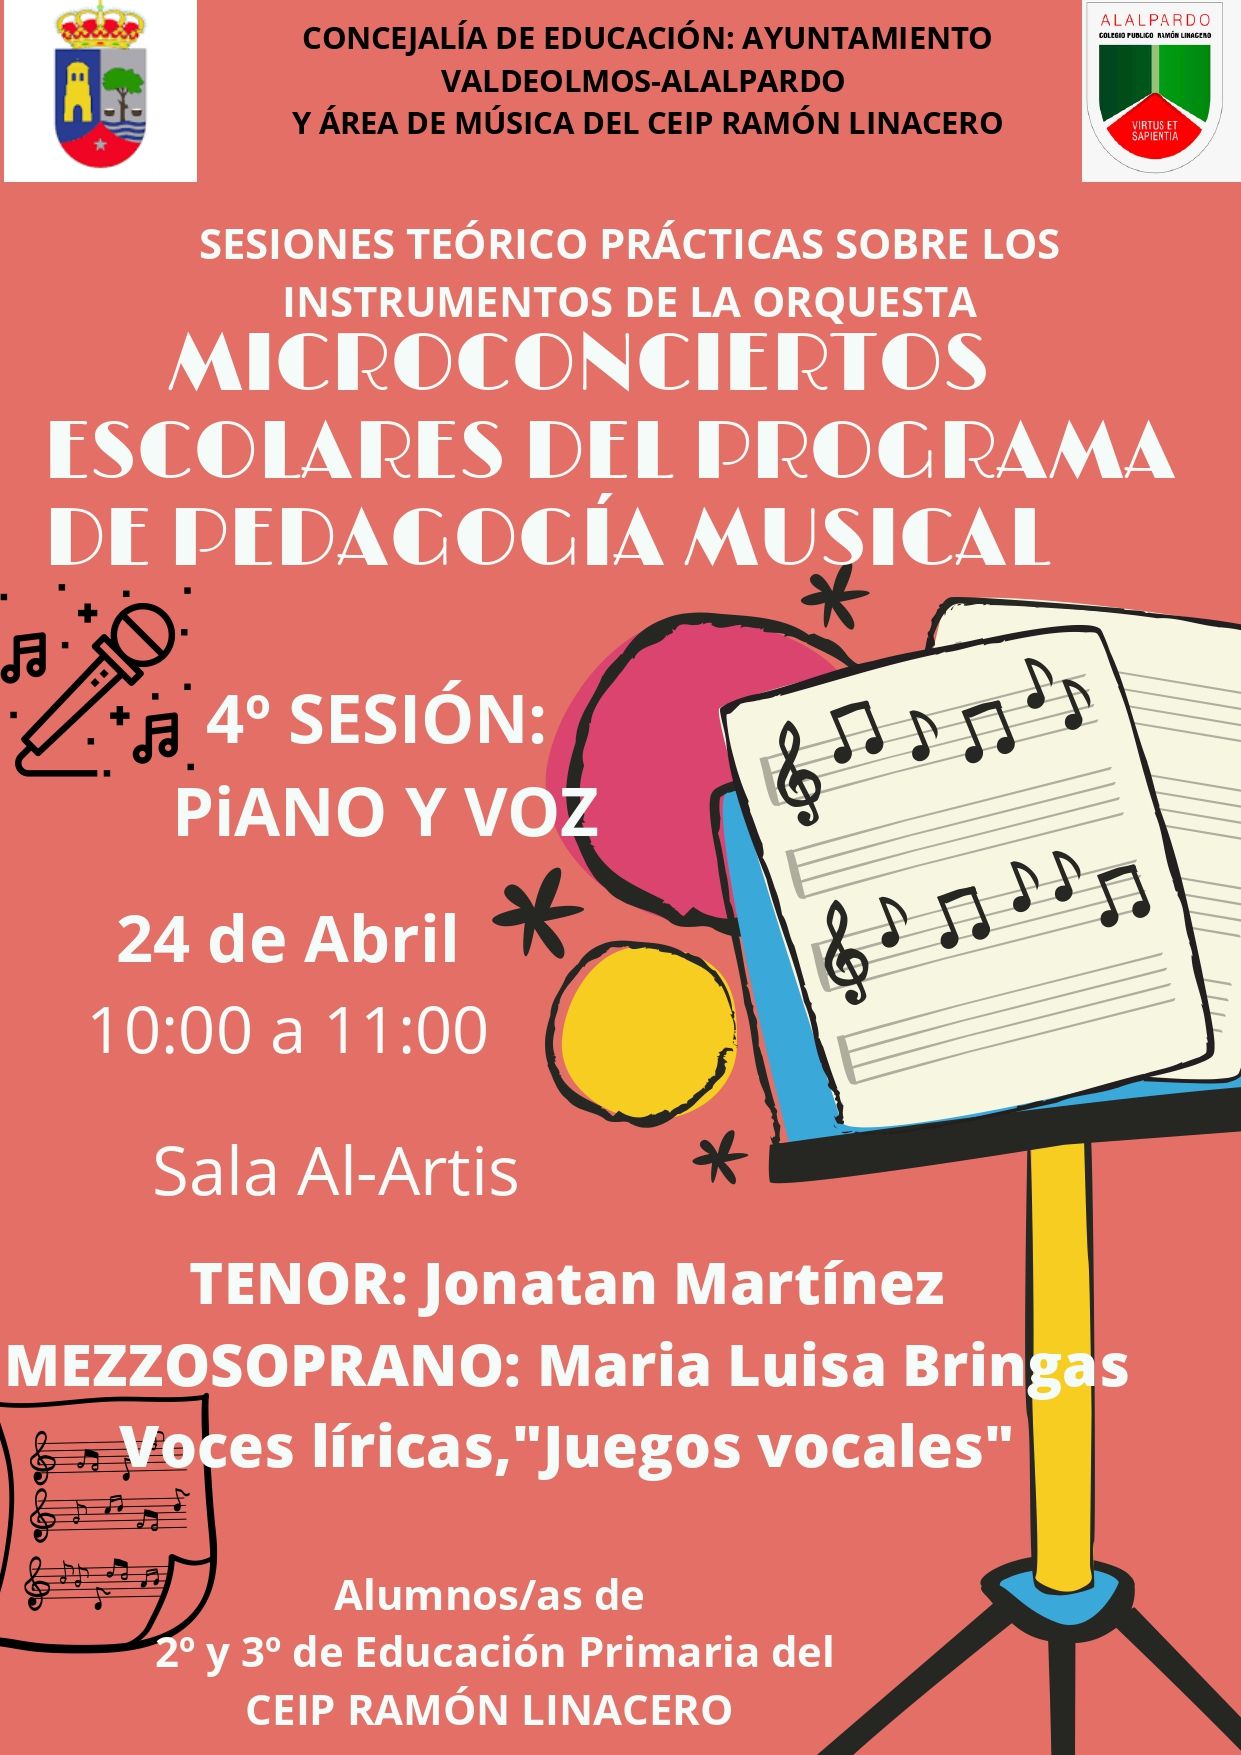 Perspicaz Partido dieta 24 de abril: Cuarto sesión de Micro conciertos escolares - Programa de  Pedagogía Musical - Ayuntamiento de Valdeolmos-Alalpardo